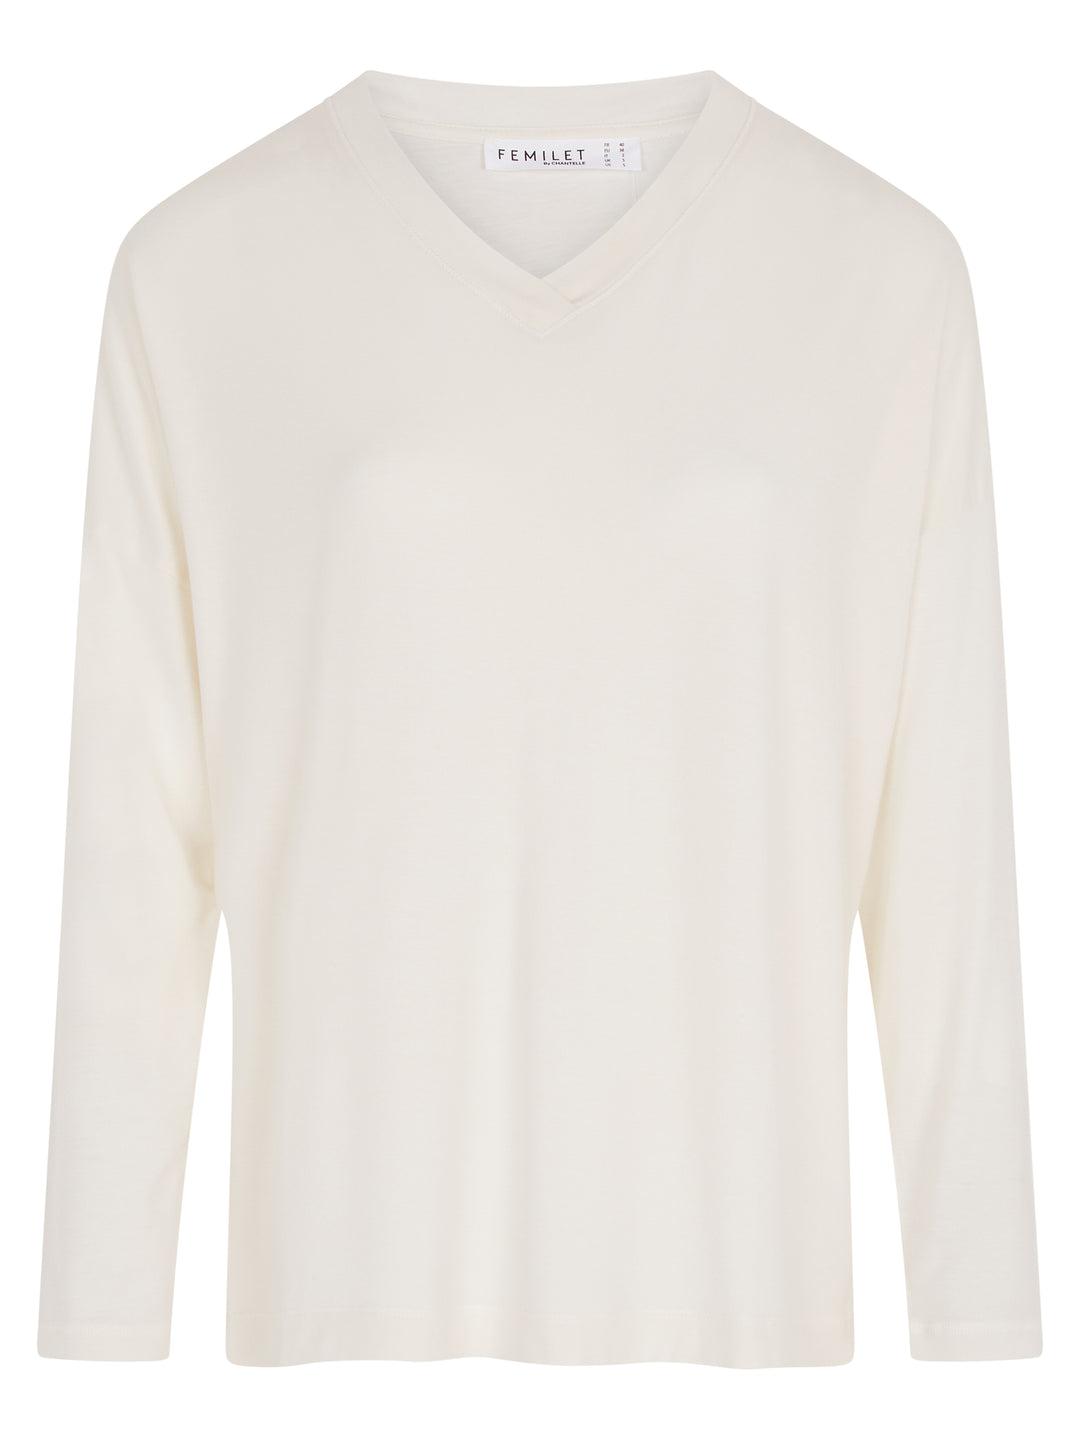 Femilet - Kate T-Shirt Long Sleeves Ivory